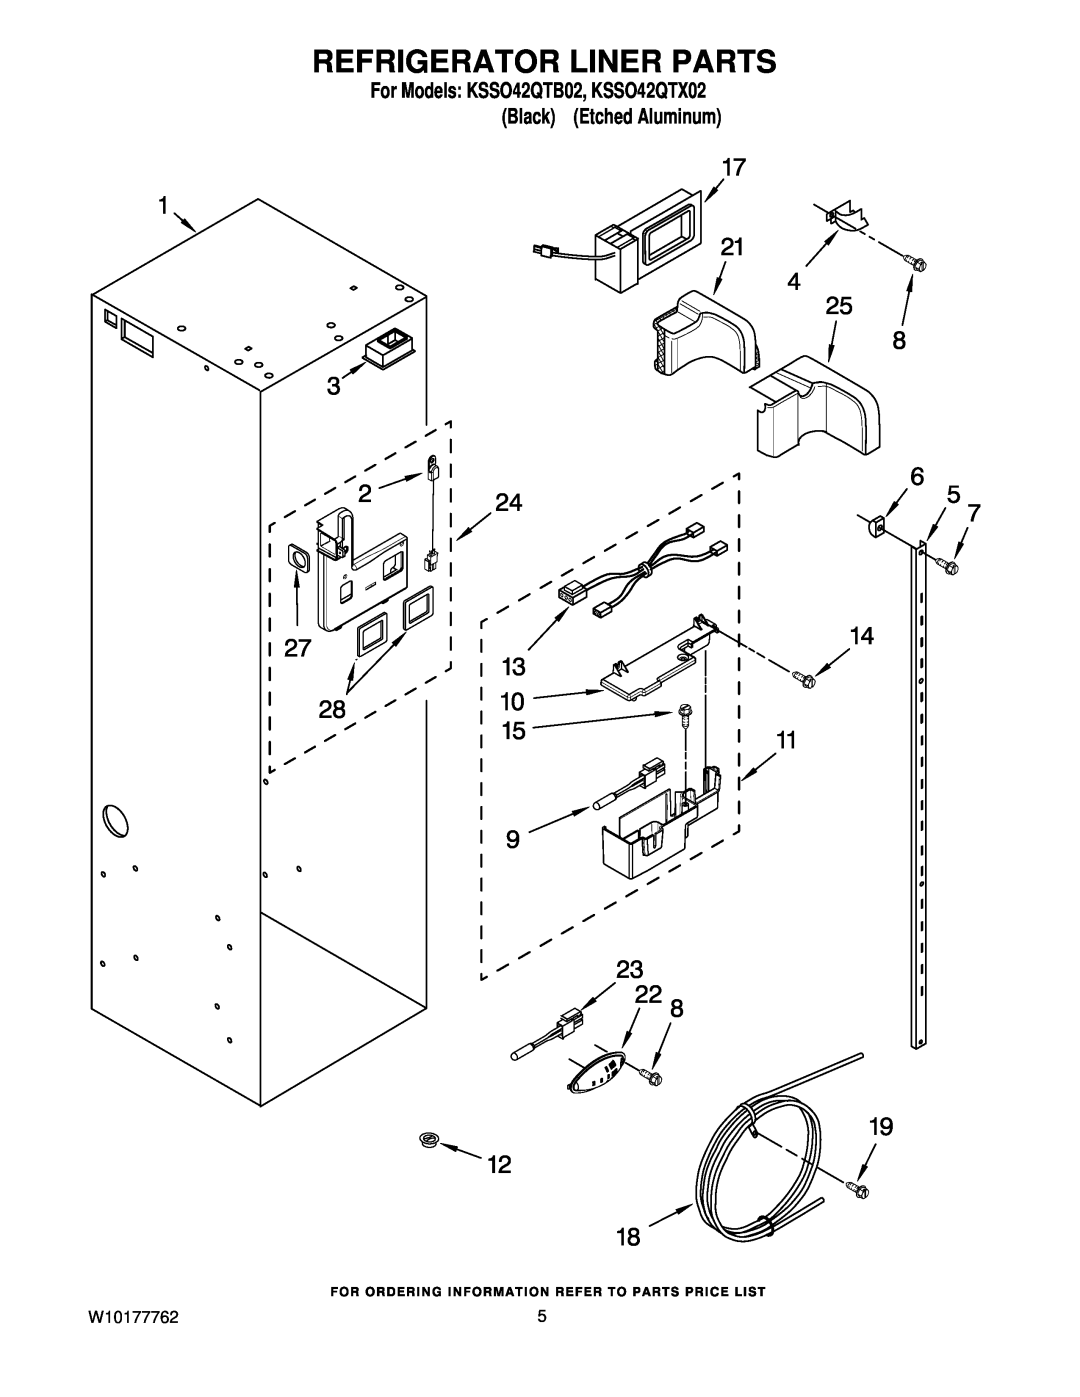 KitchenAid manual Refrigerator Liner Parts, W10177762, For Models KSSO42QTB02, KSSO42QTX02 Black Etched Aluminum 